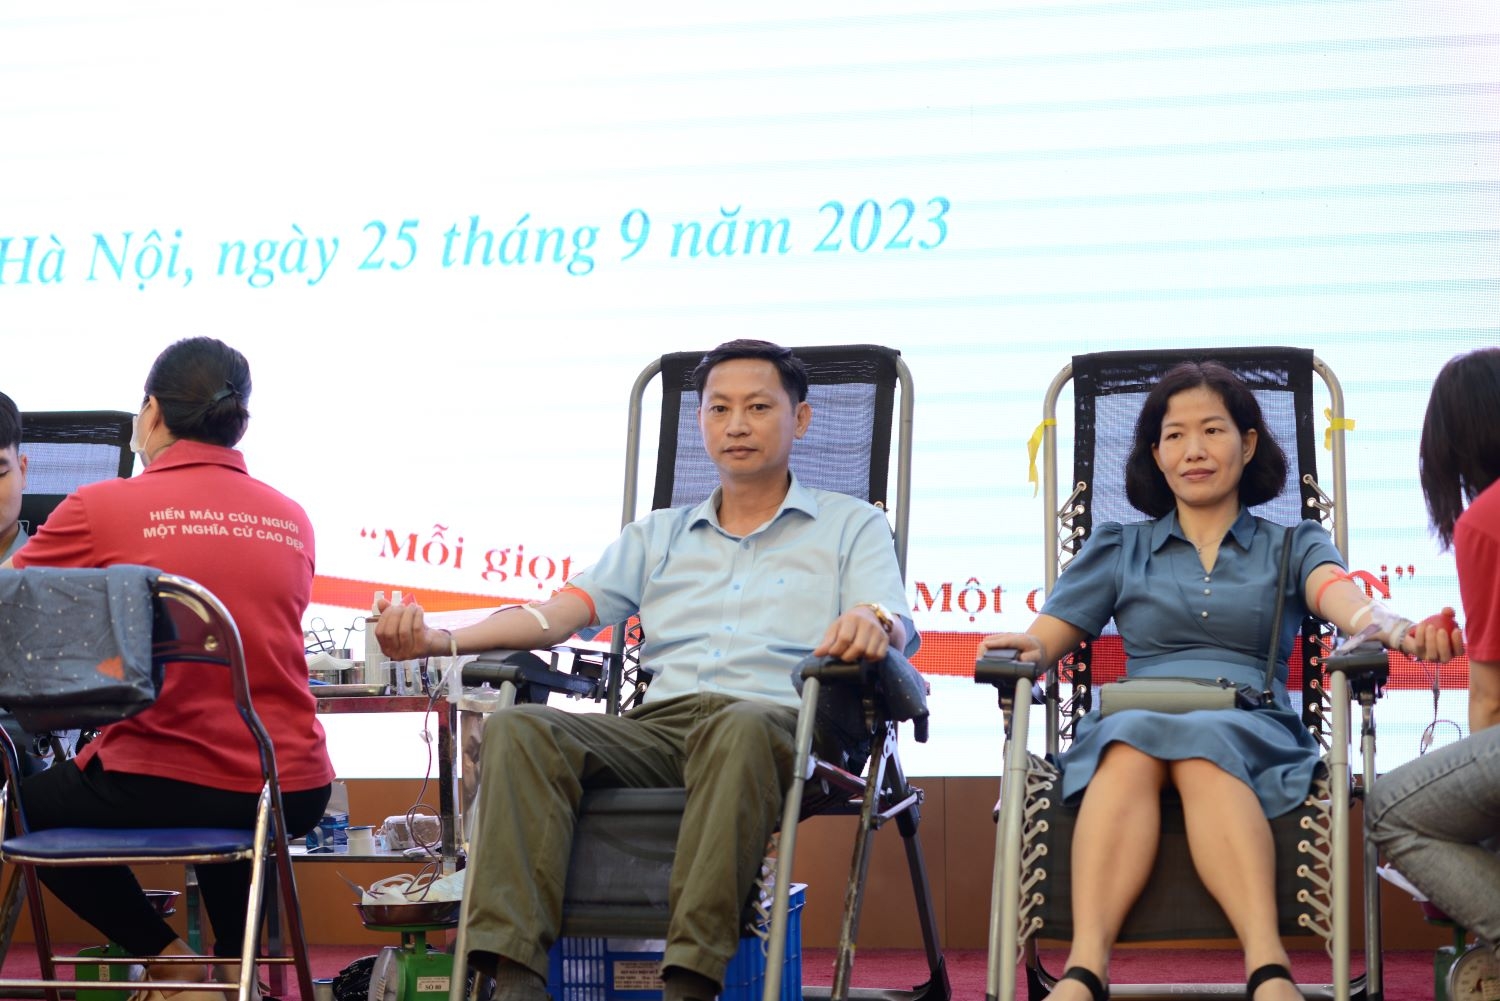 Bộ Kế hoạch và Đầu tư tổ chức Chương trình hiến máu tình nguyện năm 2023 với chủ đề “Chung dòng máu Việt”